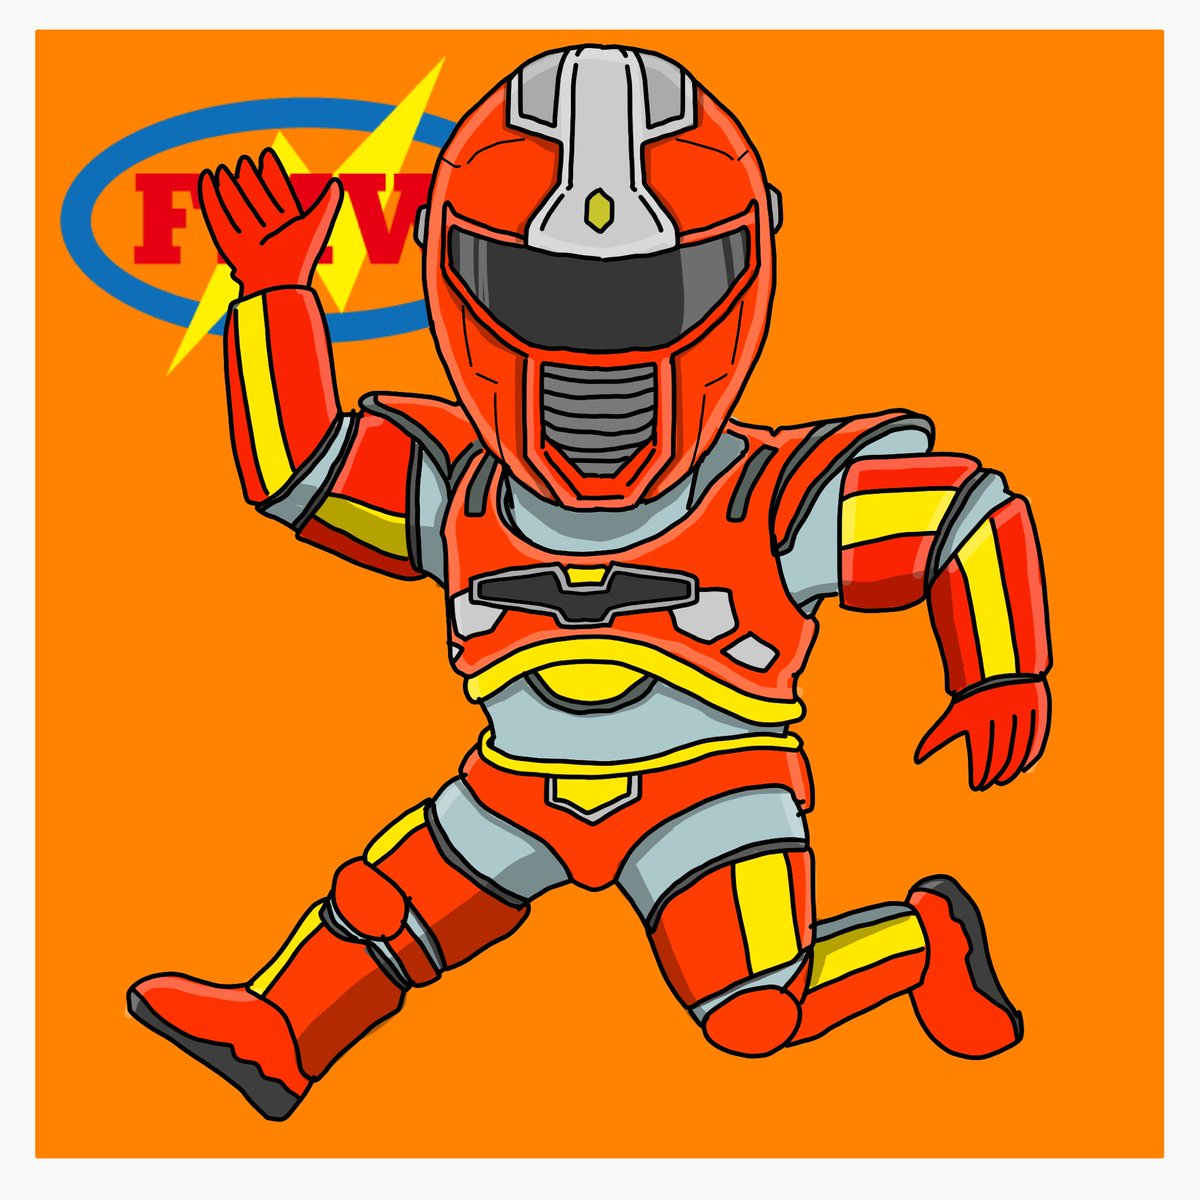 Ishi Kantoku Twitterissa Fmwレスラーイラストno 26 超電戦士バトレンジャー 初めはヘルメット風のマスクでしたね 当時 サスケ選手との王座決定戦の記事で初めて知りました 新生fmw エンタメ期にいたら どんなキャラになっていたんでしょうね Fmw プロレス